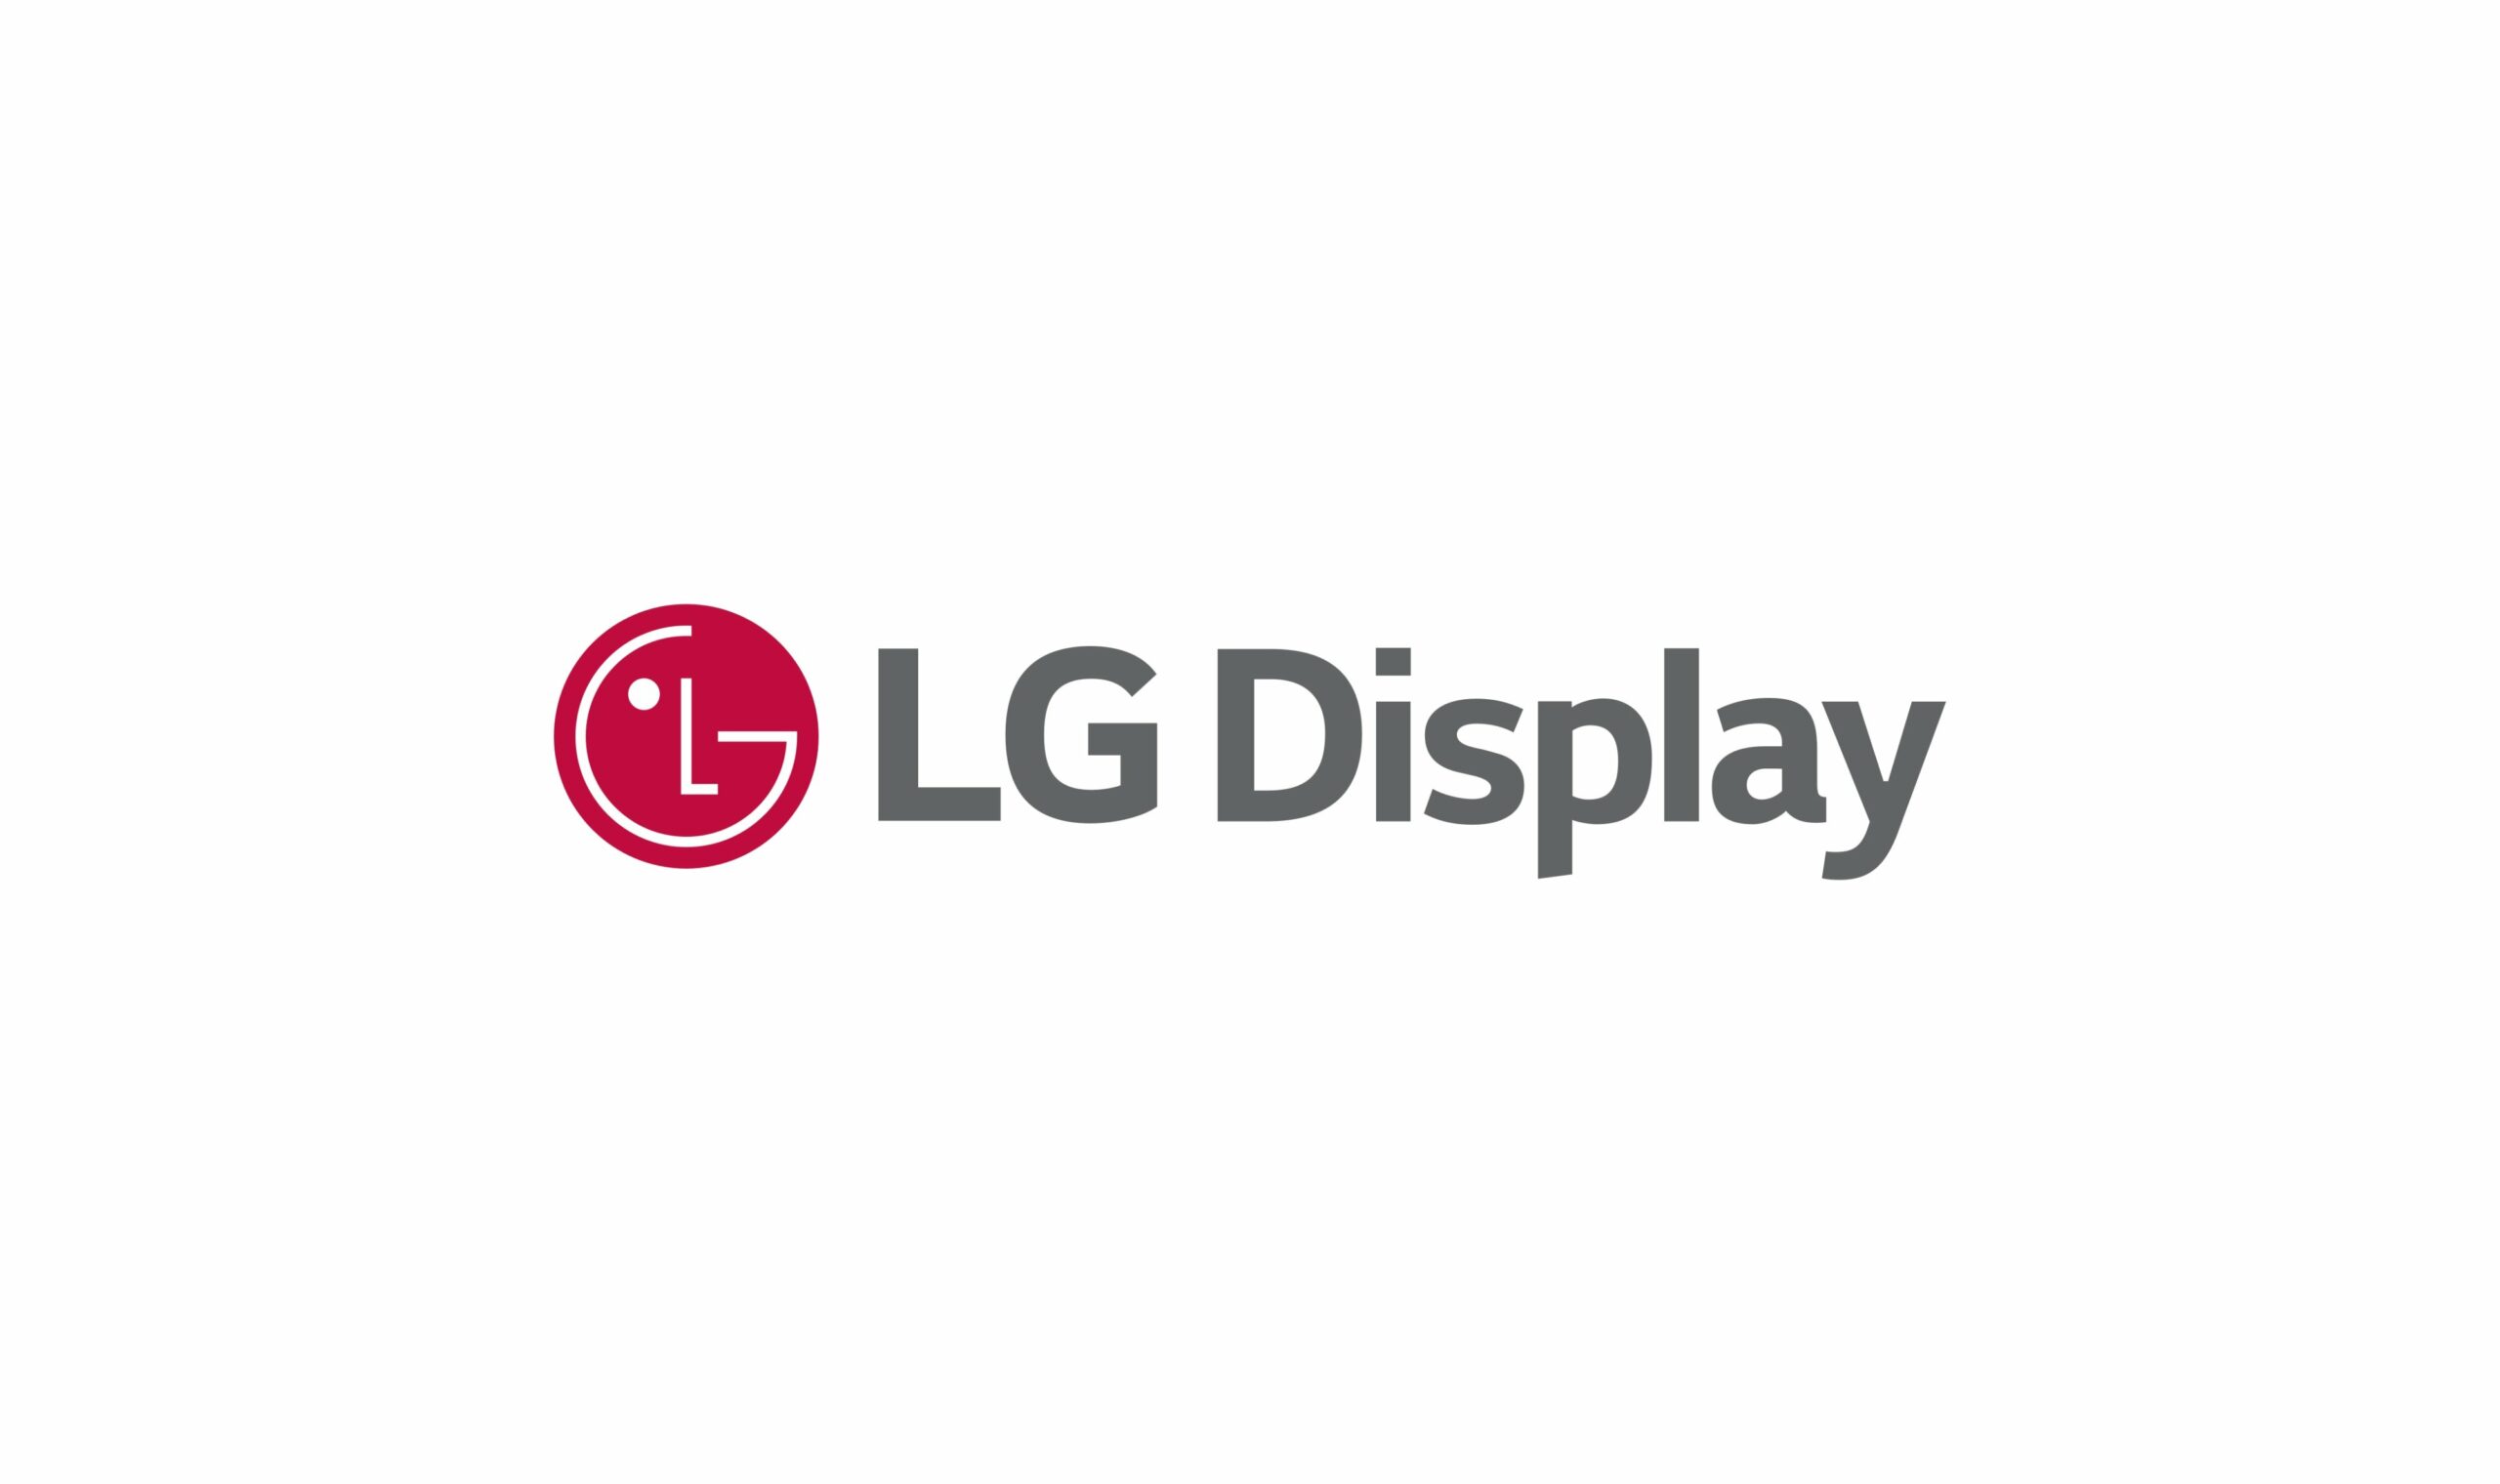 LG 디스플레이 로고 추천